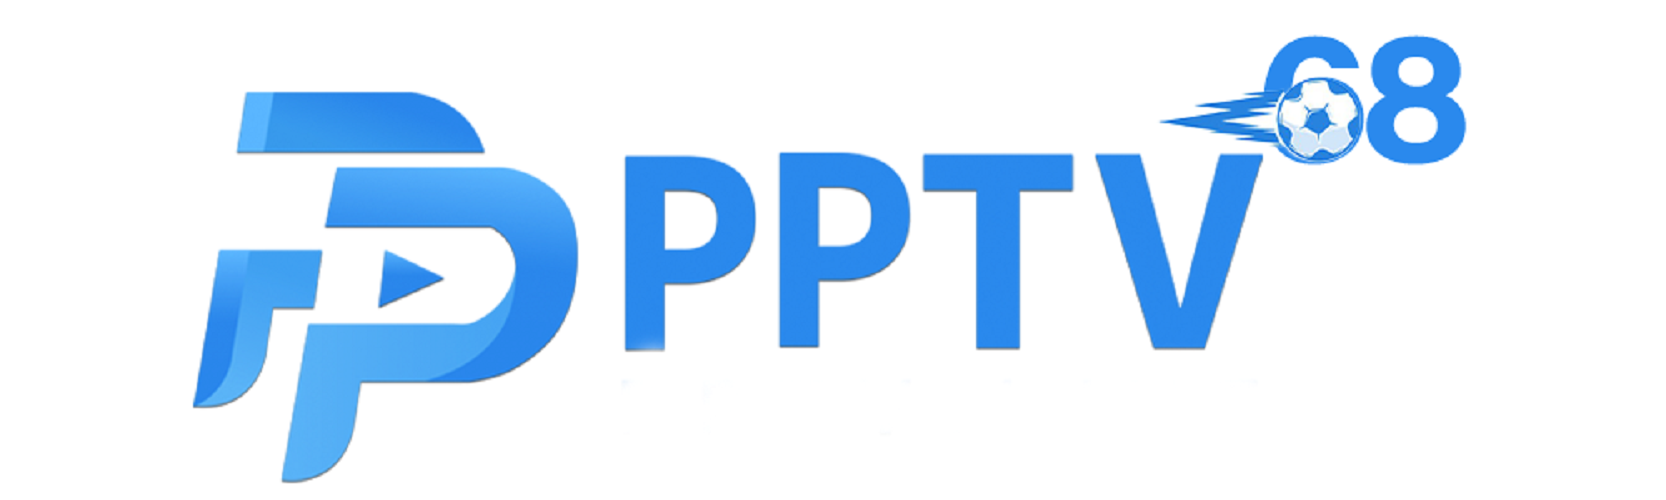 PPTV com Cover Image